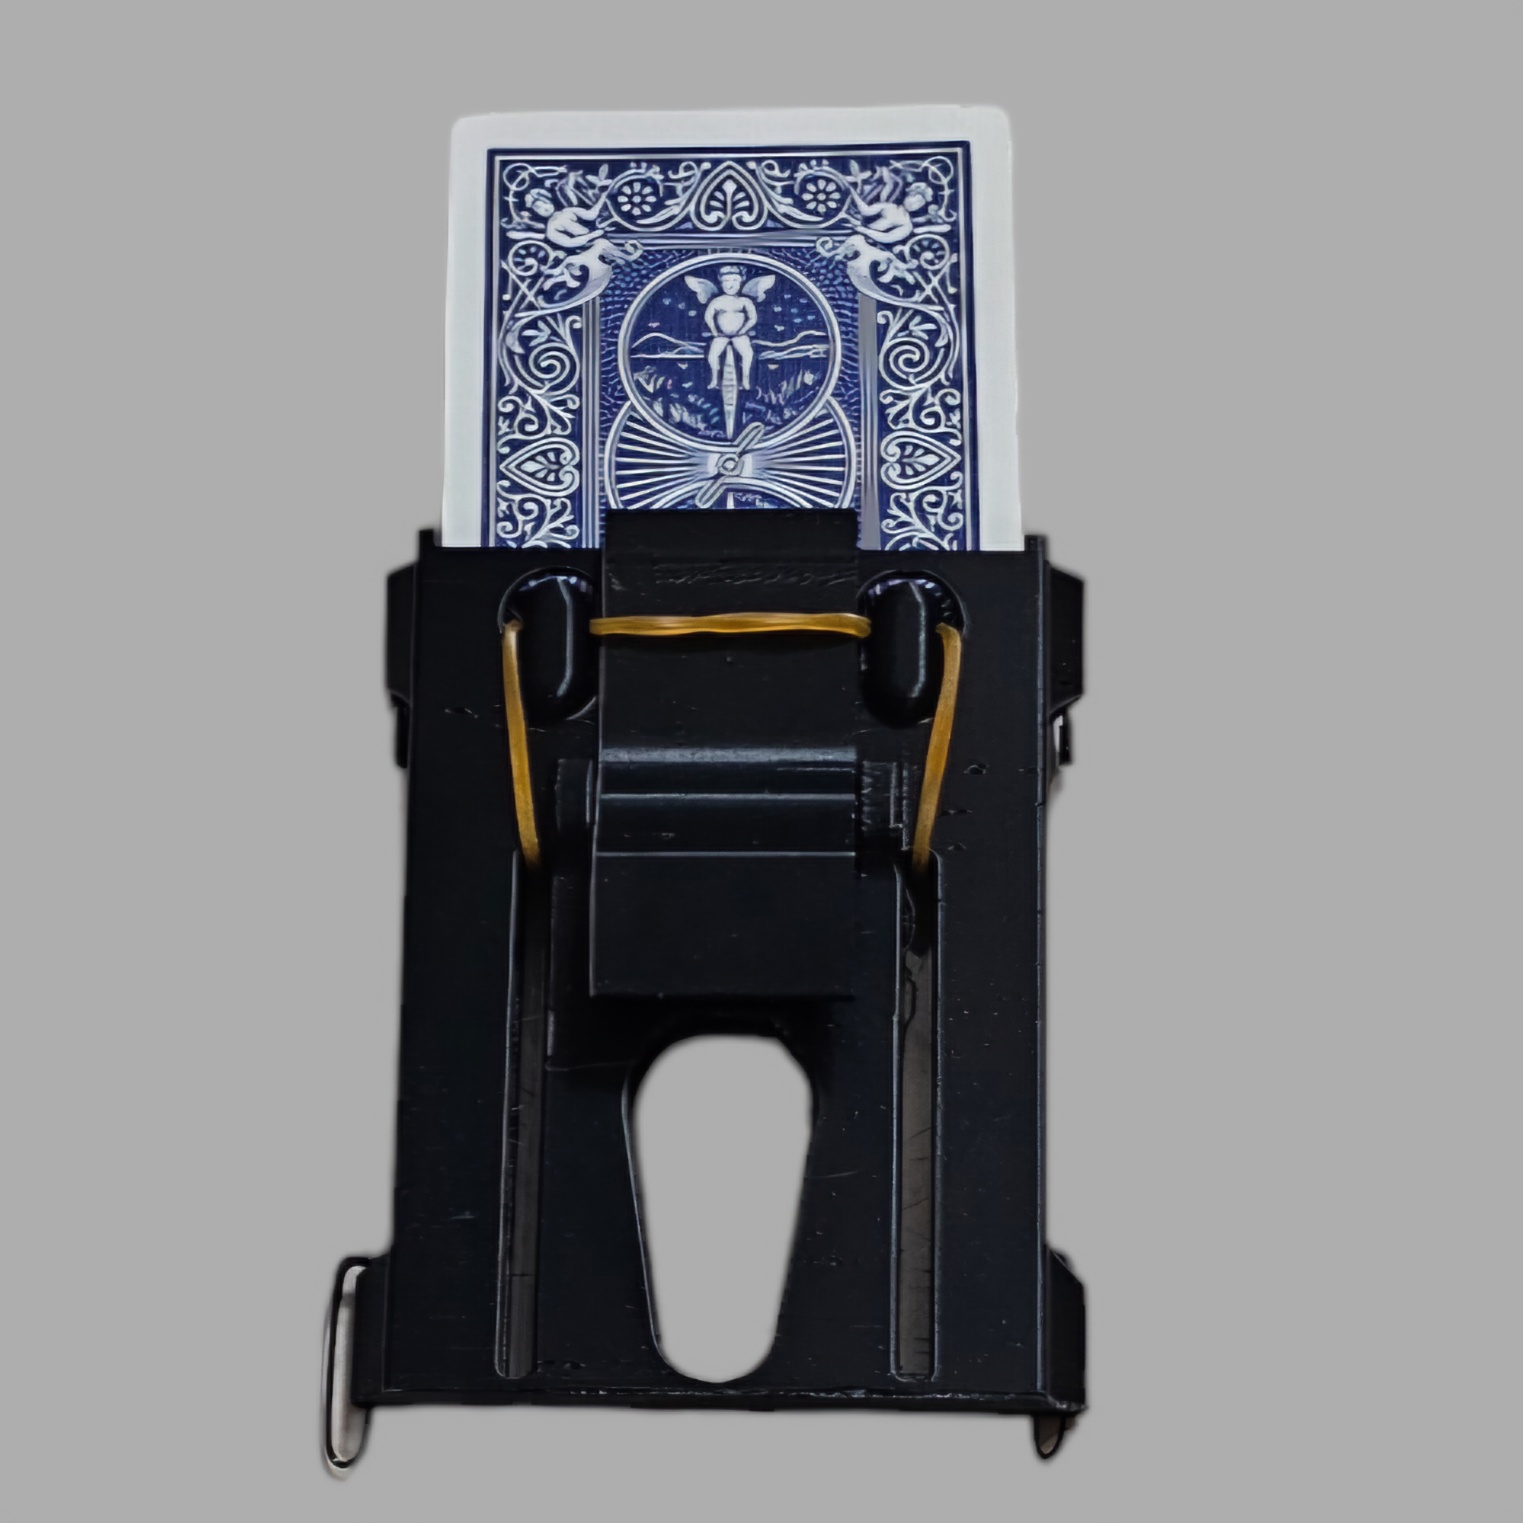 미스테리시스템(카드홀더) Mysterious System (card holder) by J.C Magic미스테리시스템(카드홀더) Mysterious System (card holder) by J.C Magic